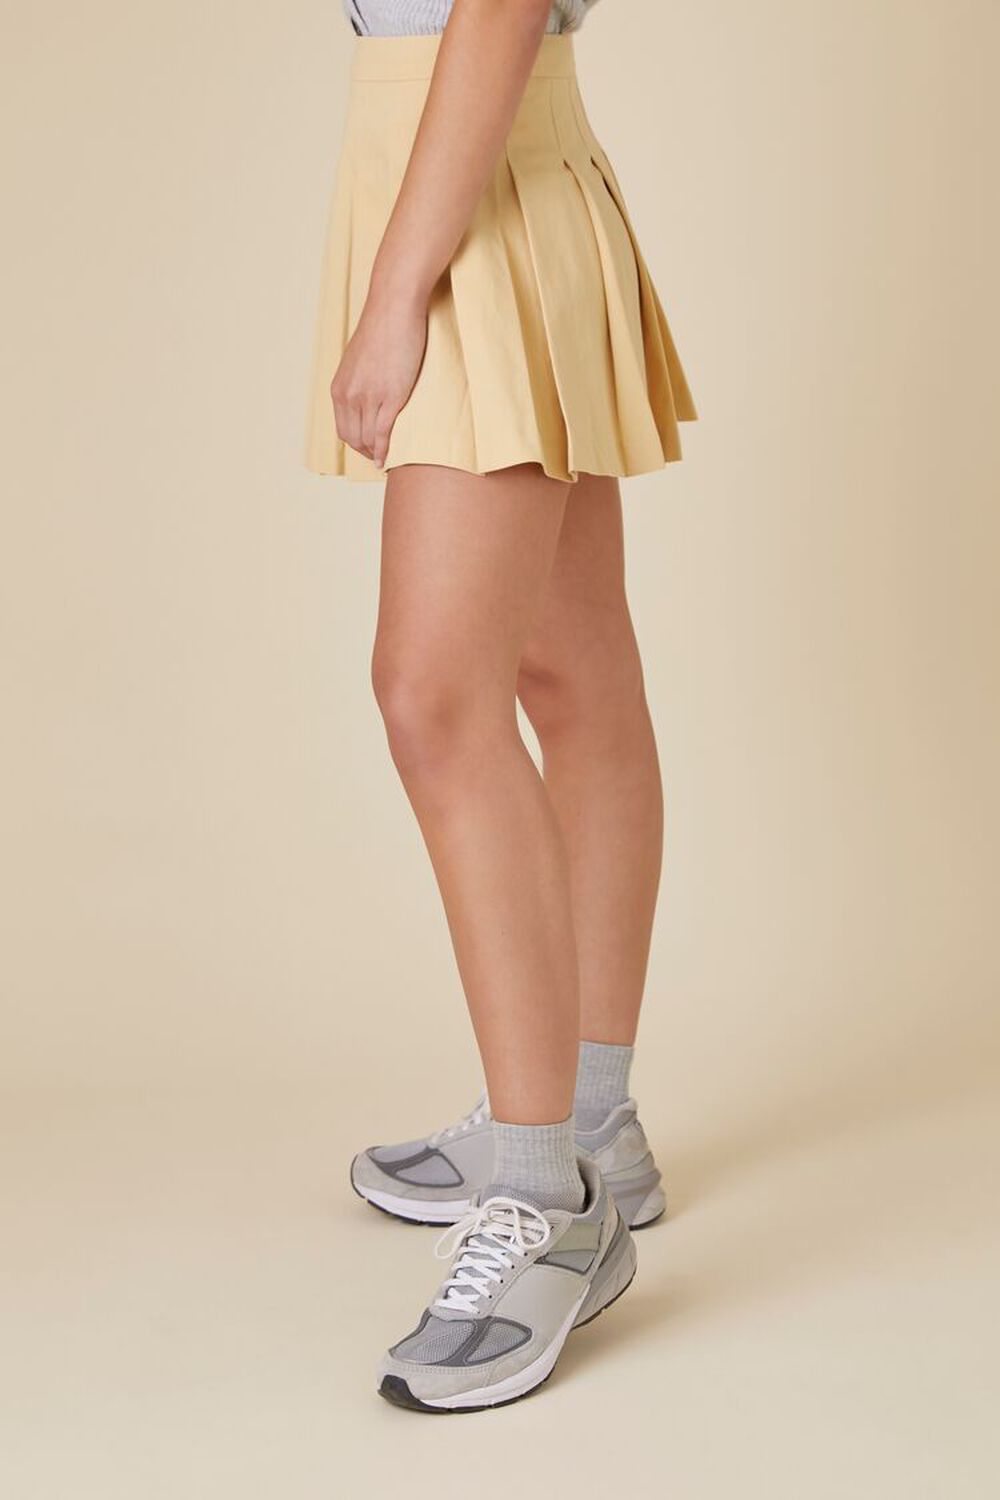 KHAKI Pleated Uniform Mini Skirt, image 3